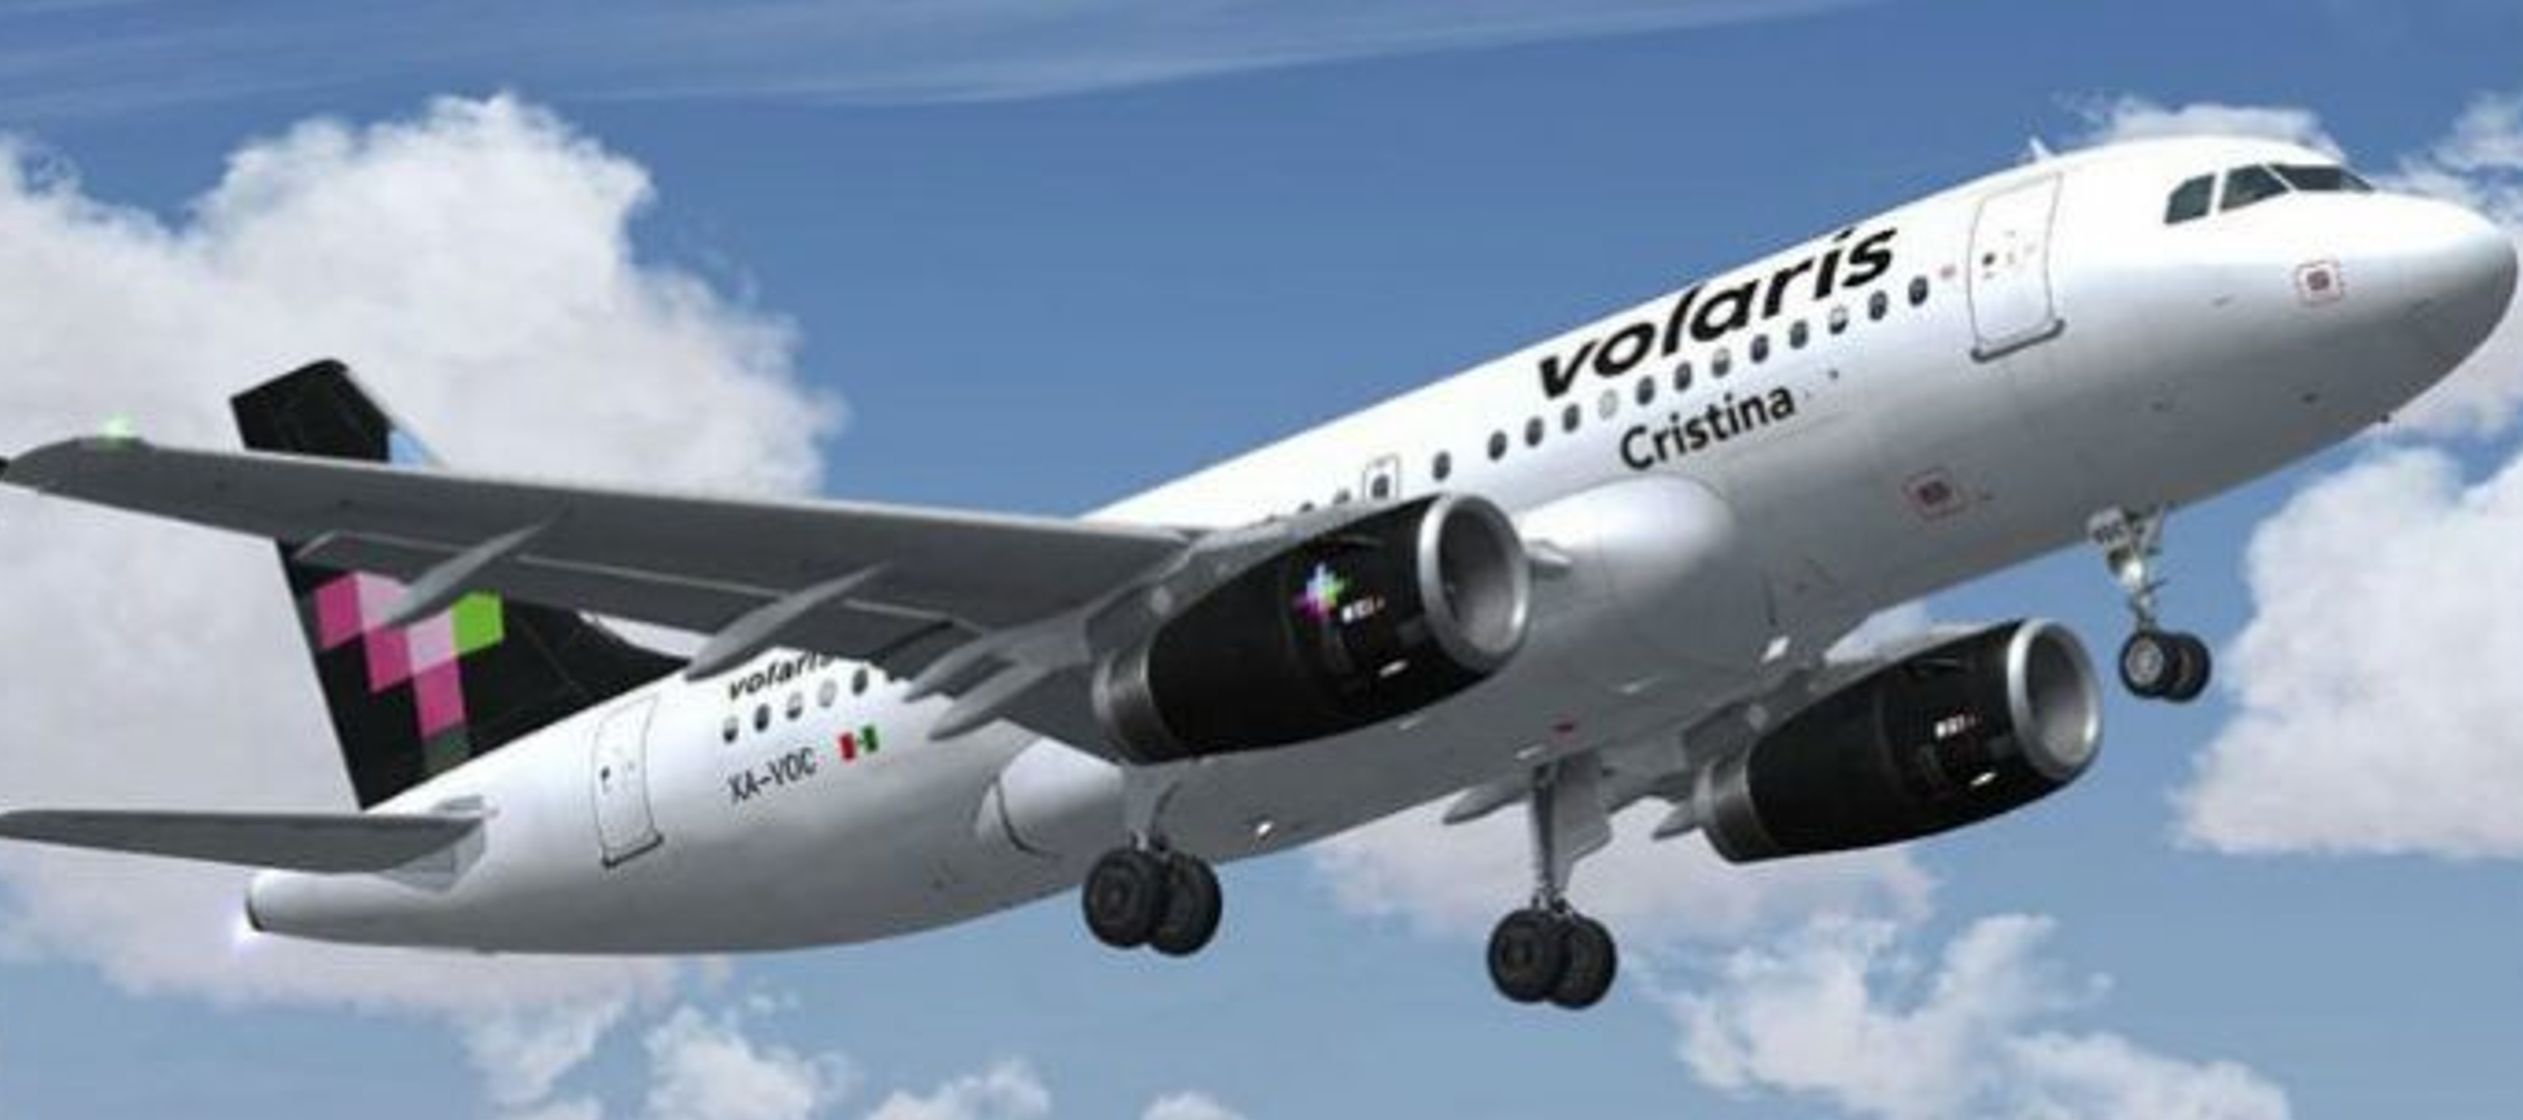 El vuelo de la aerolínea Volaris encontró la turbulencia a 10.3300 metros de altitud...